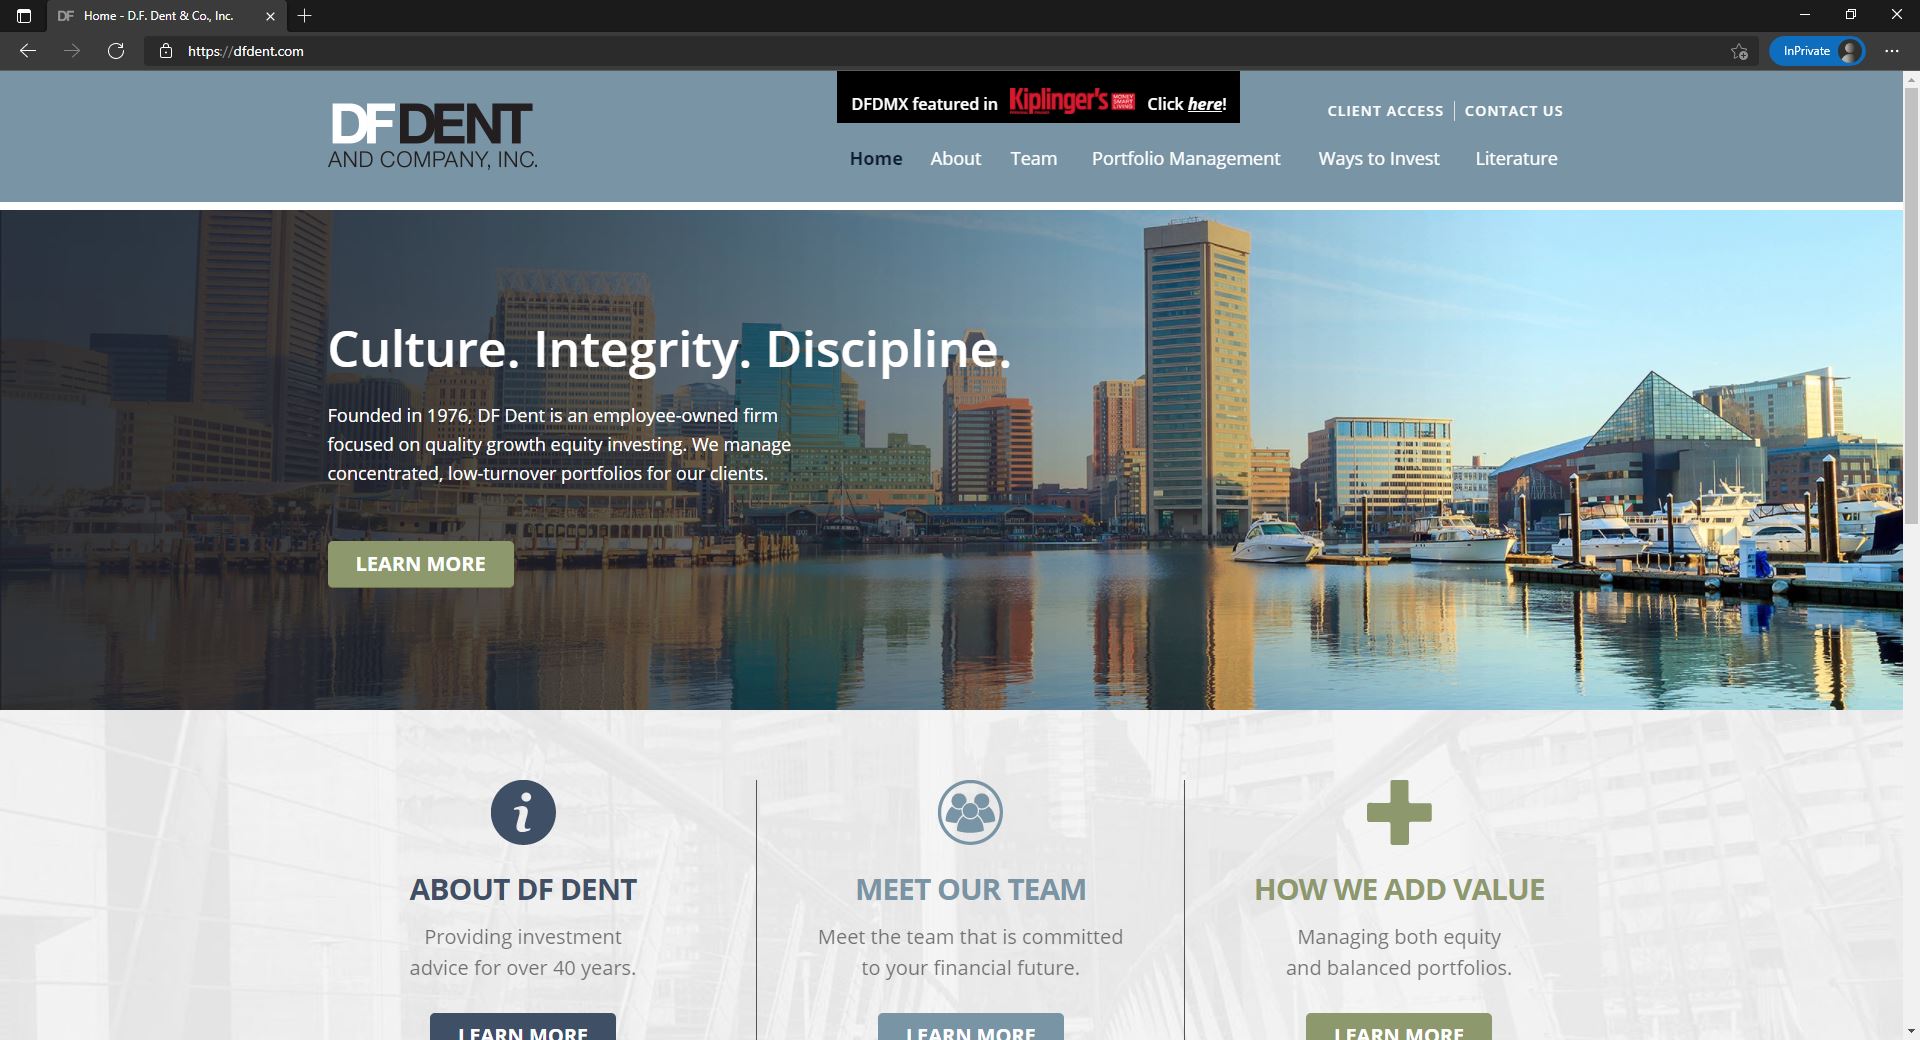 D.F. Dent & Co website